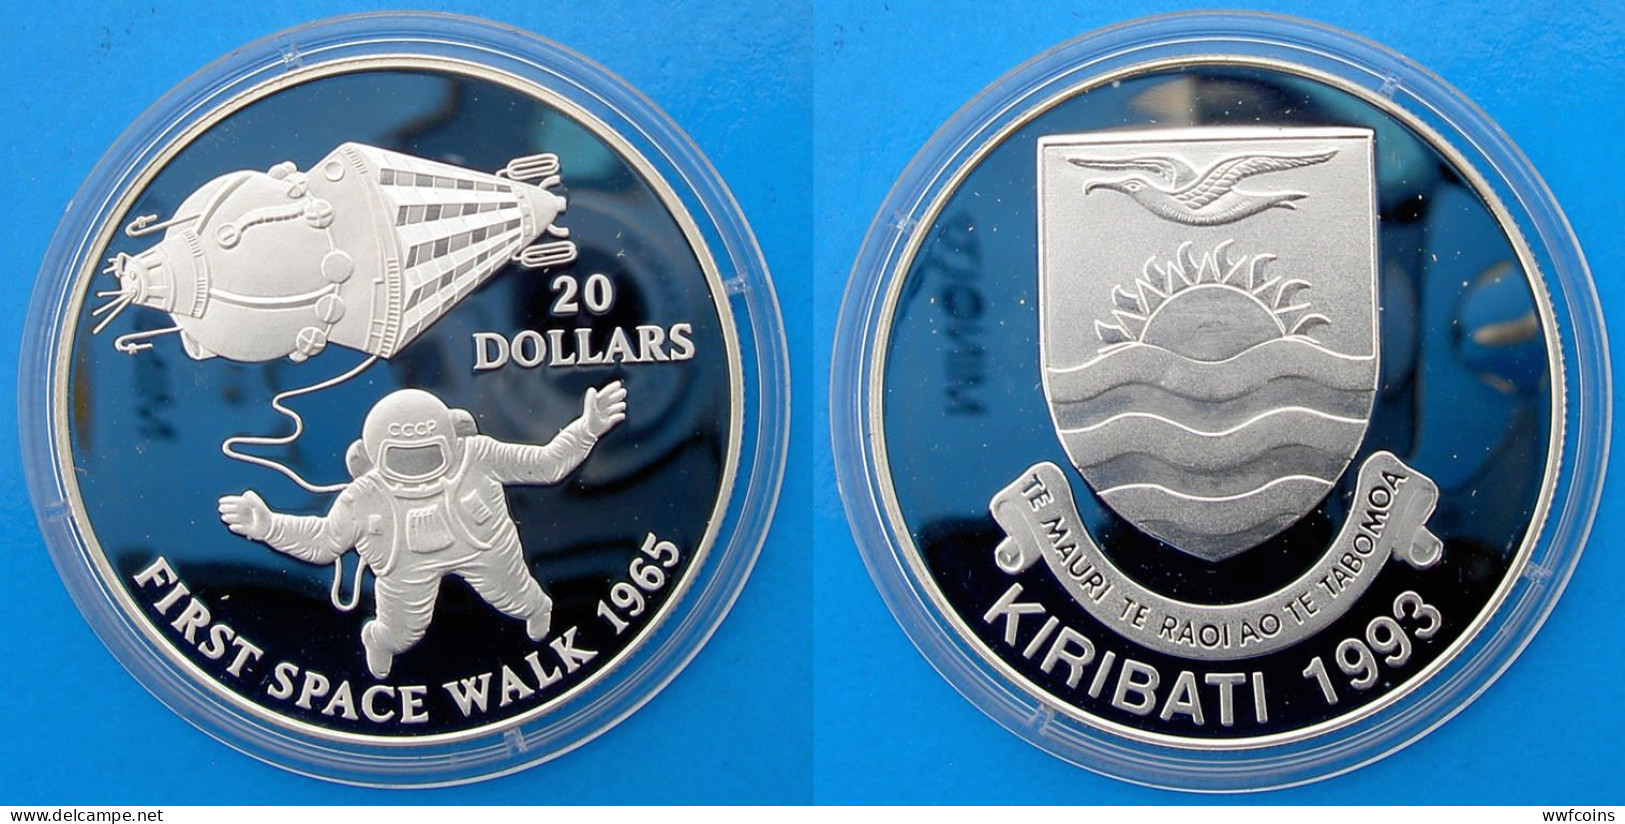 KIRIBATI 20 $ 1993 ARGENTO PROOF FIRST SPACE WALK 1965 RARA PESO 31,47g TITOLO 0,925 CONSERVAZIONE FONDO SPECCHIO UNC. - Kiribati